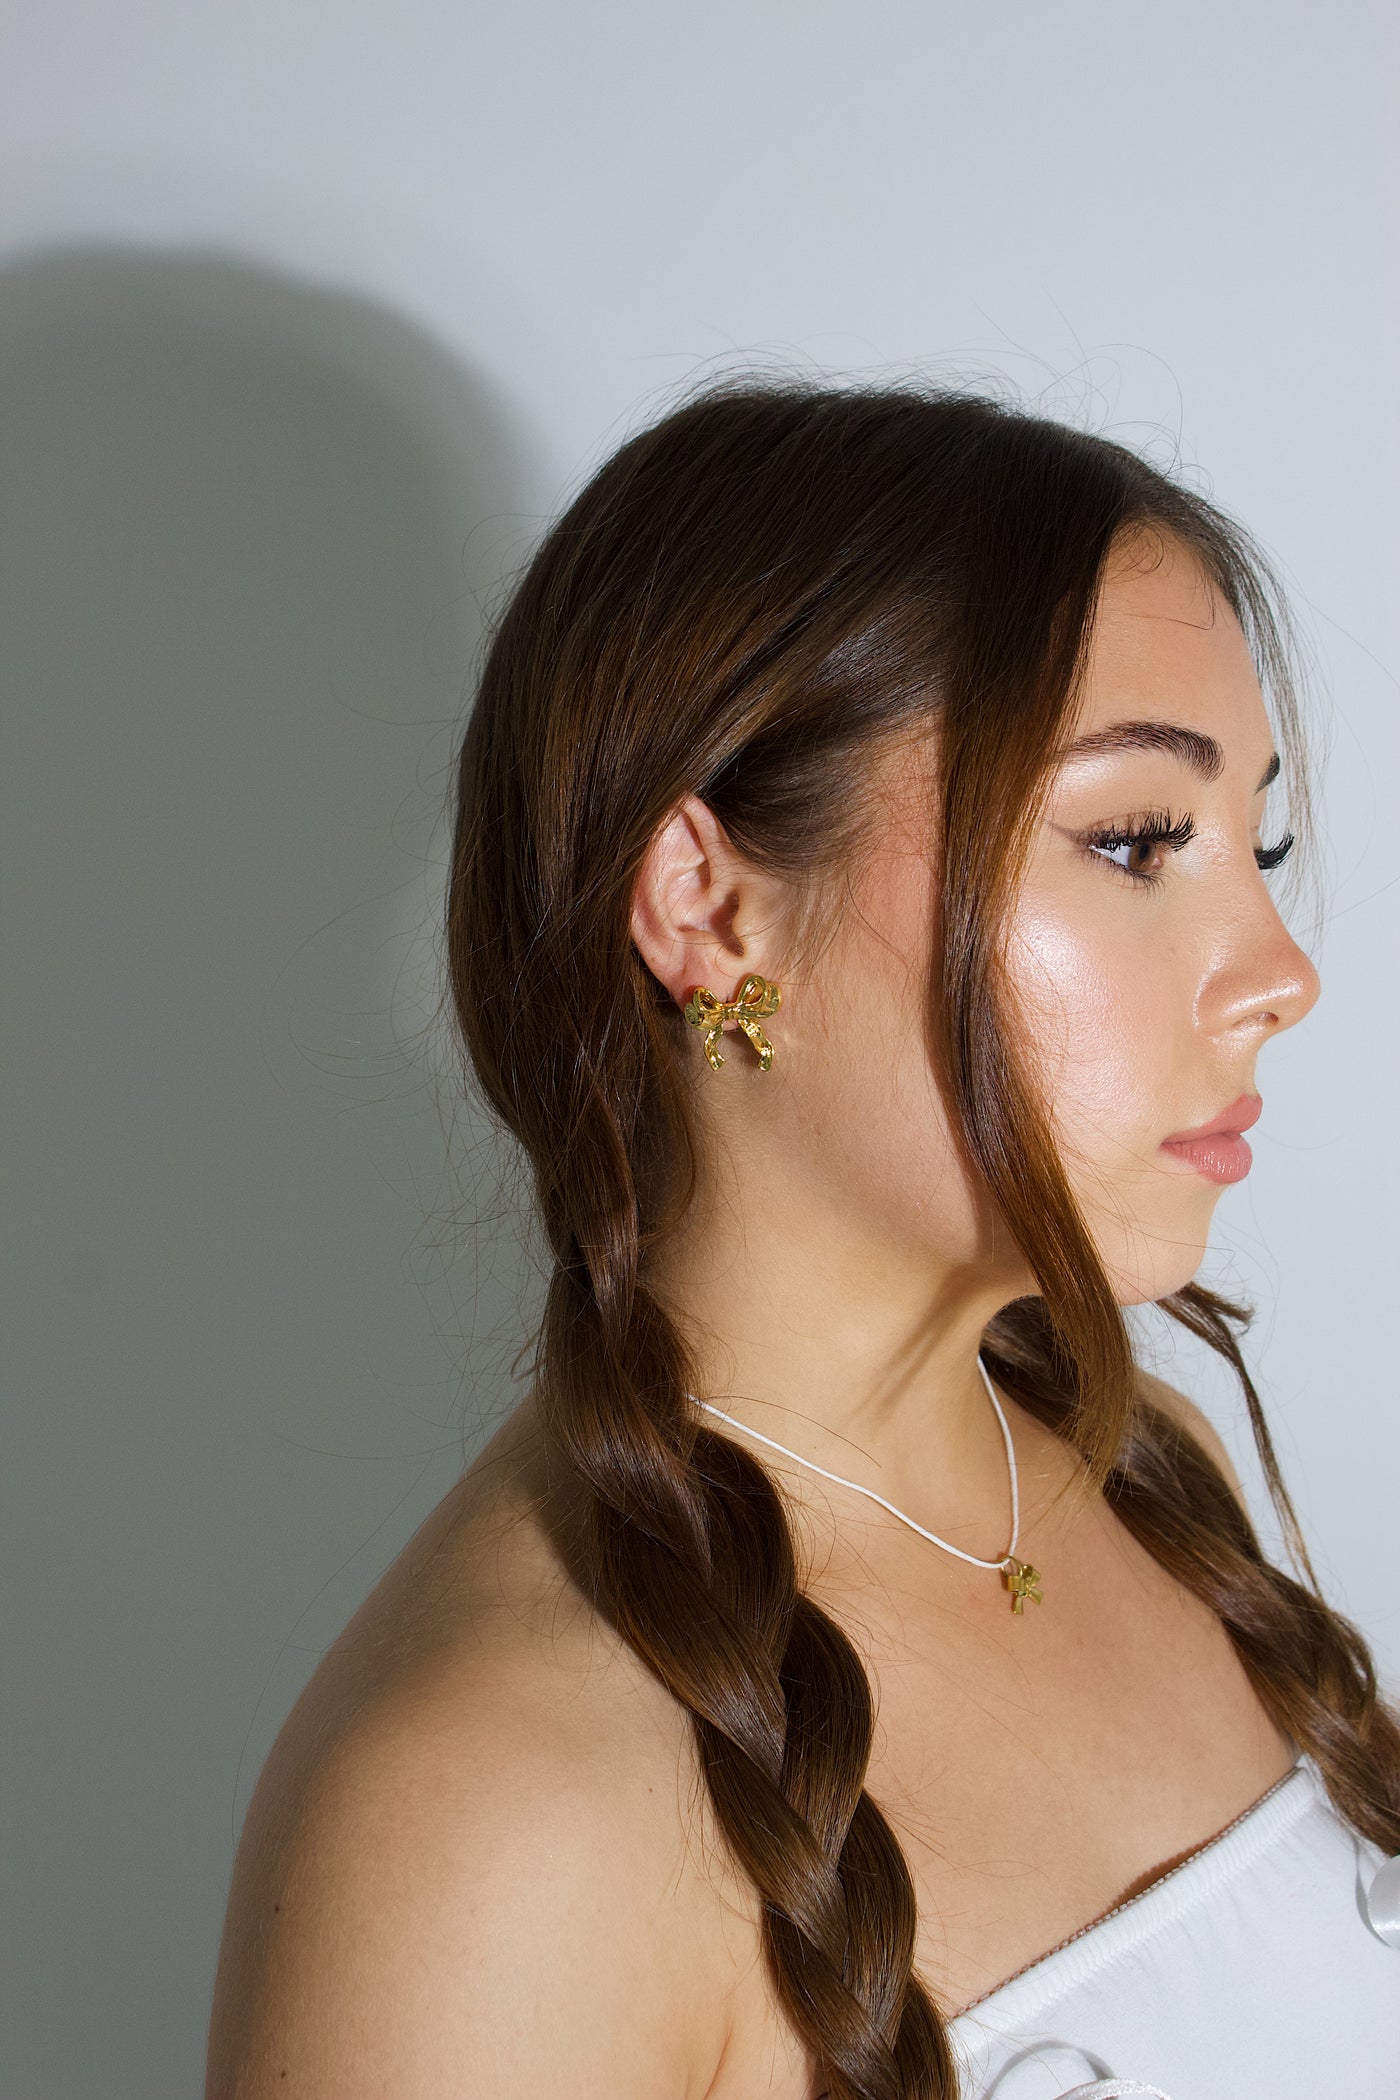 Gold Bow earrings